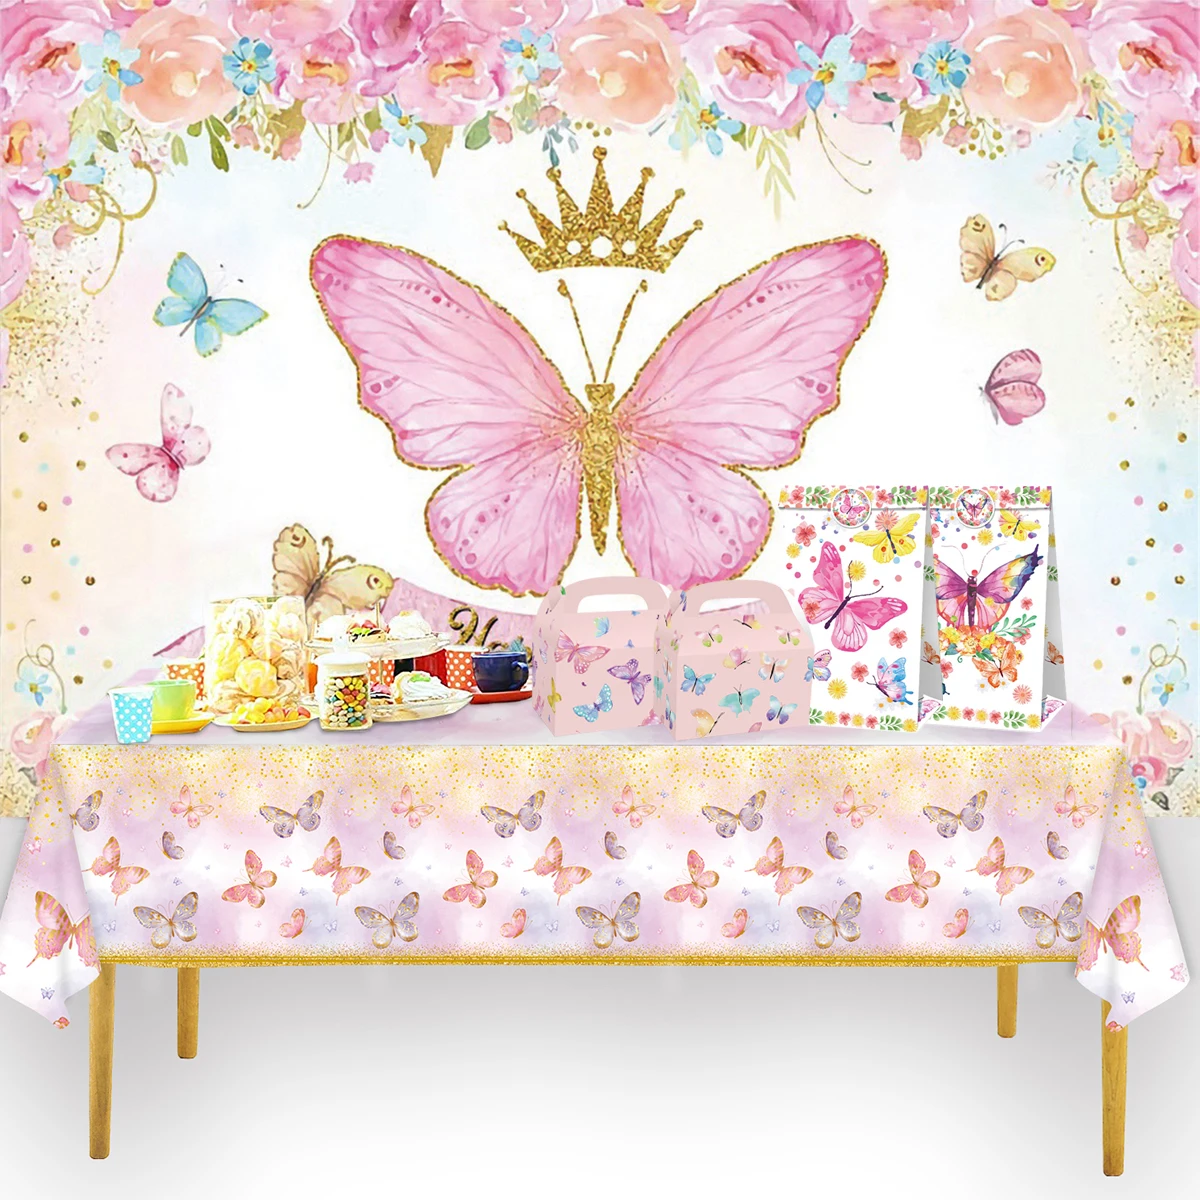 Růžová motýl narozeniny nádobí backdrop št'astný první první narozeniny večírek dekorace děti děvče motýl ozdoba děťátko sprcha